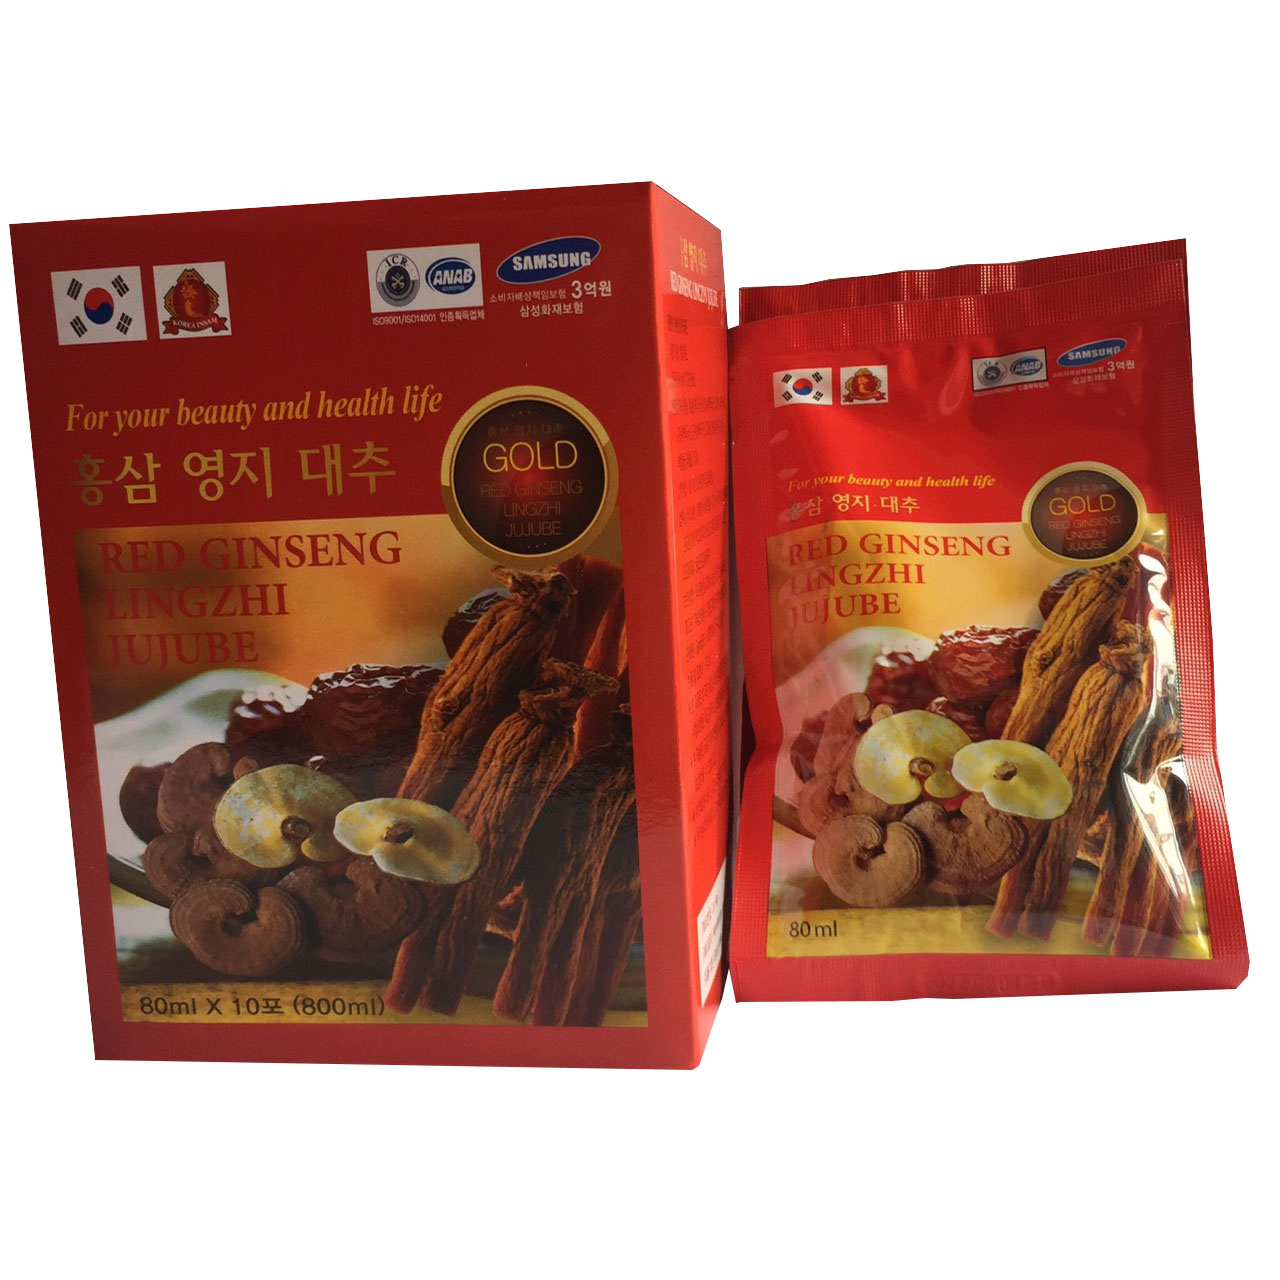 10 gói nước hồng sâm Linh chi Táo đỏ Hàn Quốc-Red Ginseng Lingzhi Jujube Gold 80ml, nước sâm bịch, nước sâm, PP Sâm Yến Thái An